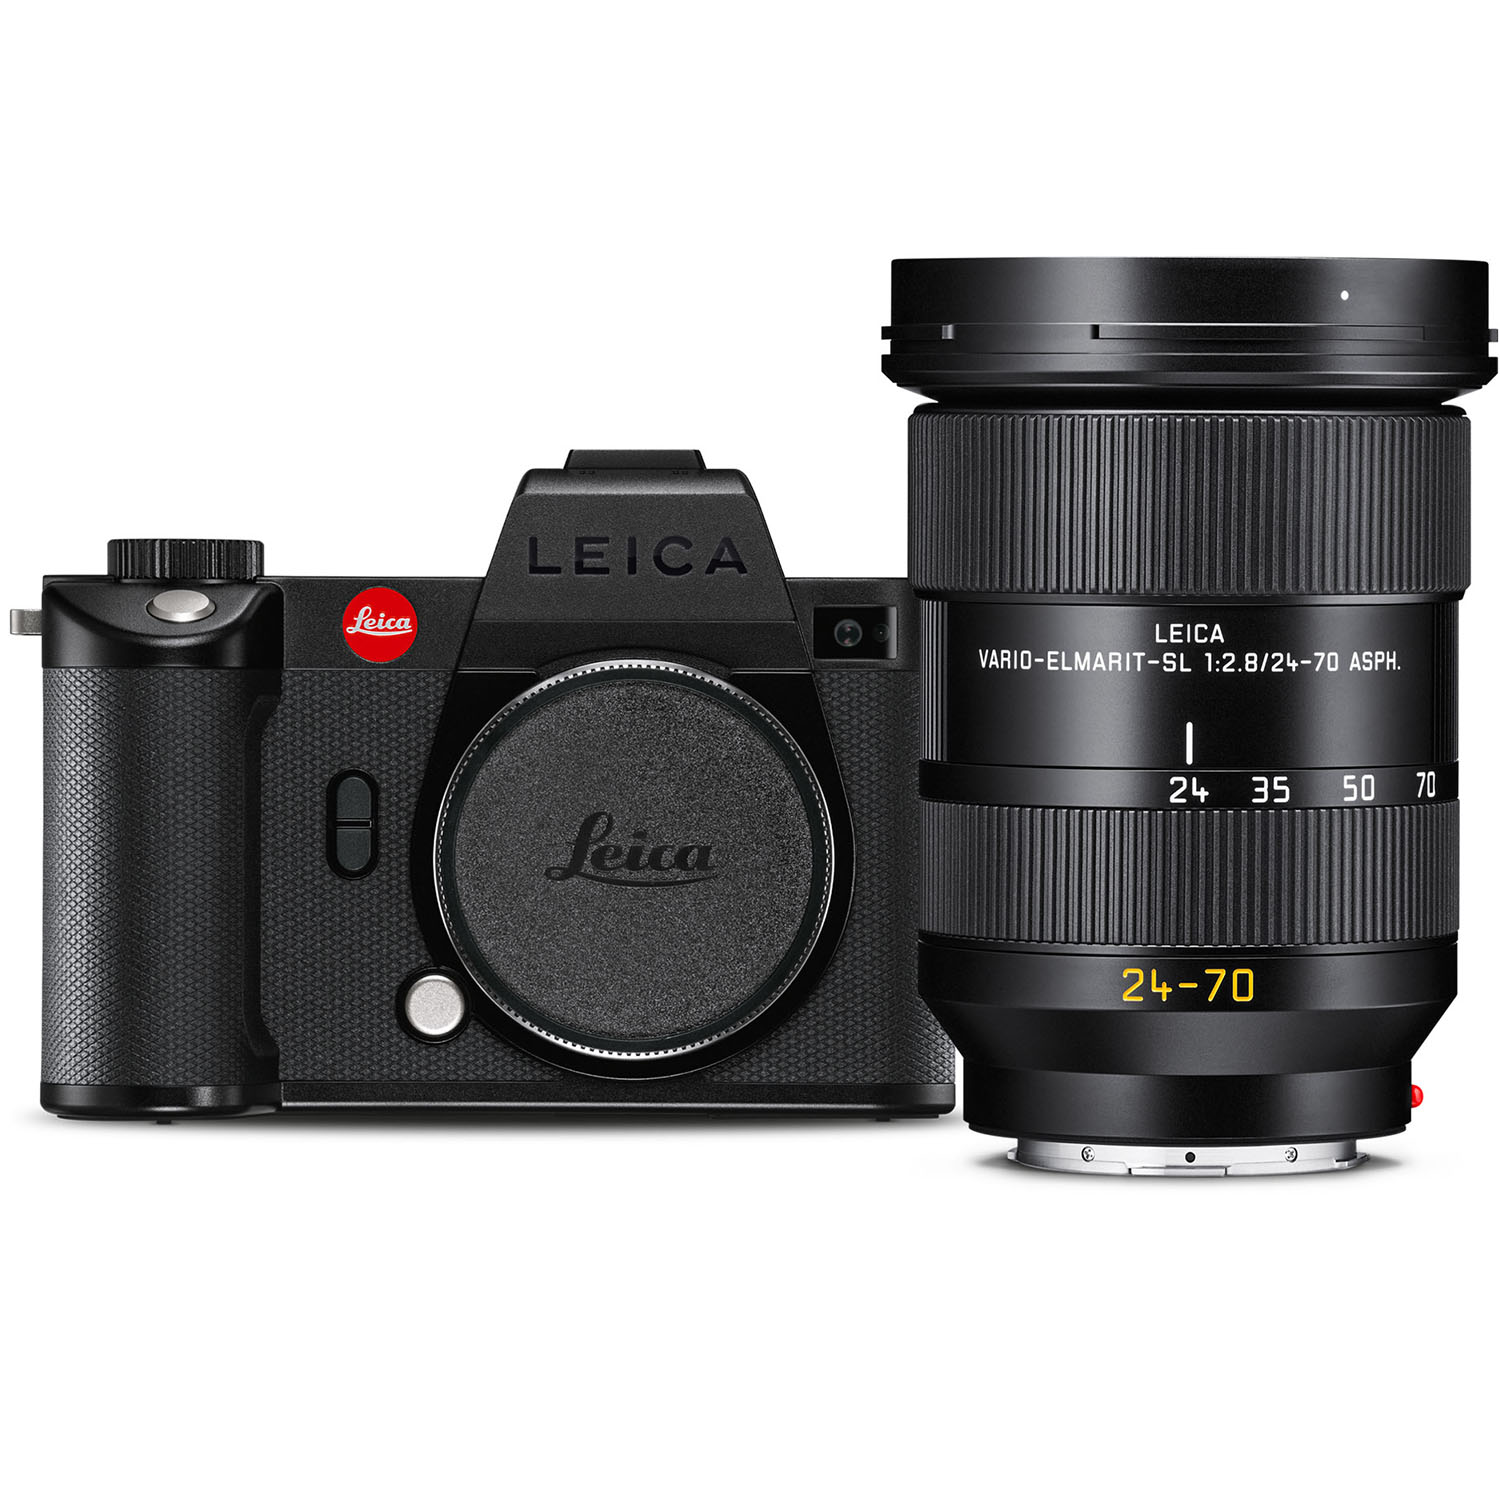 Leica SL2-S w/ 24-70mm